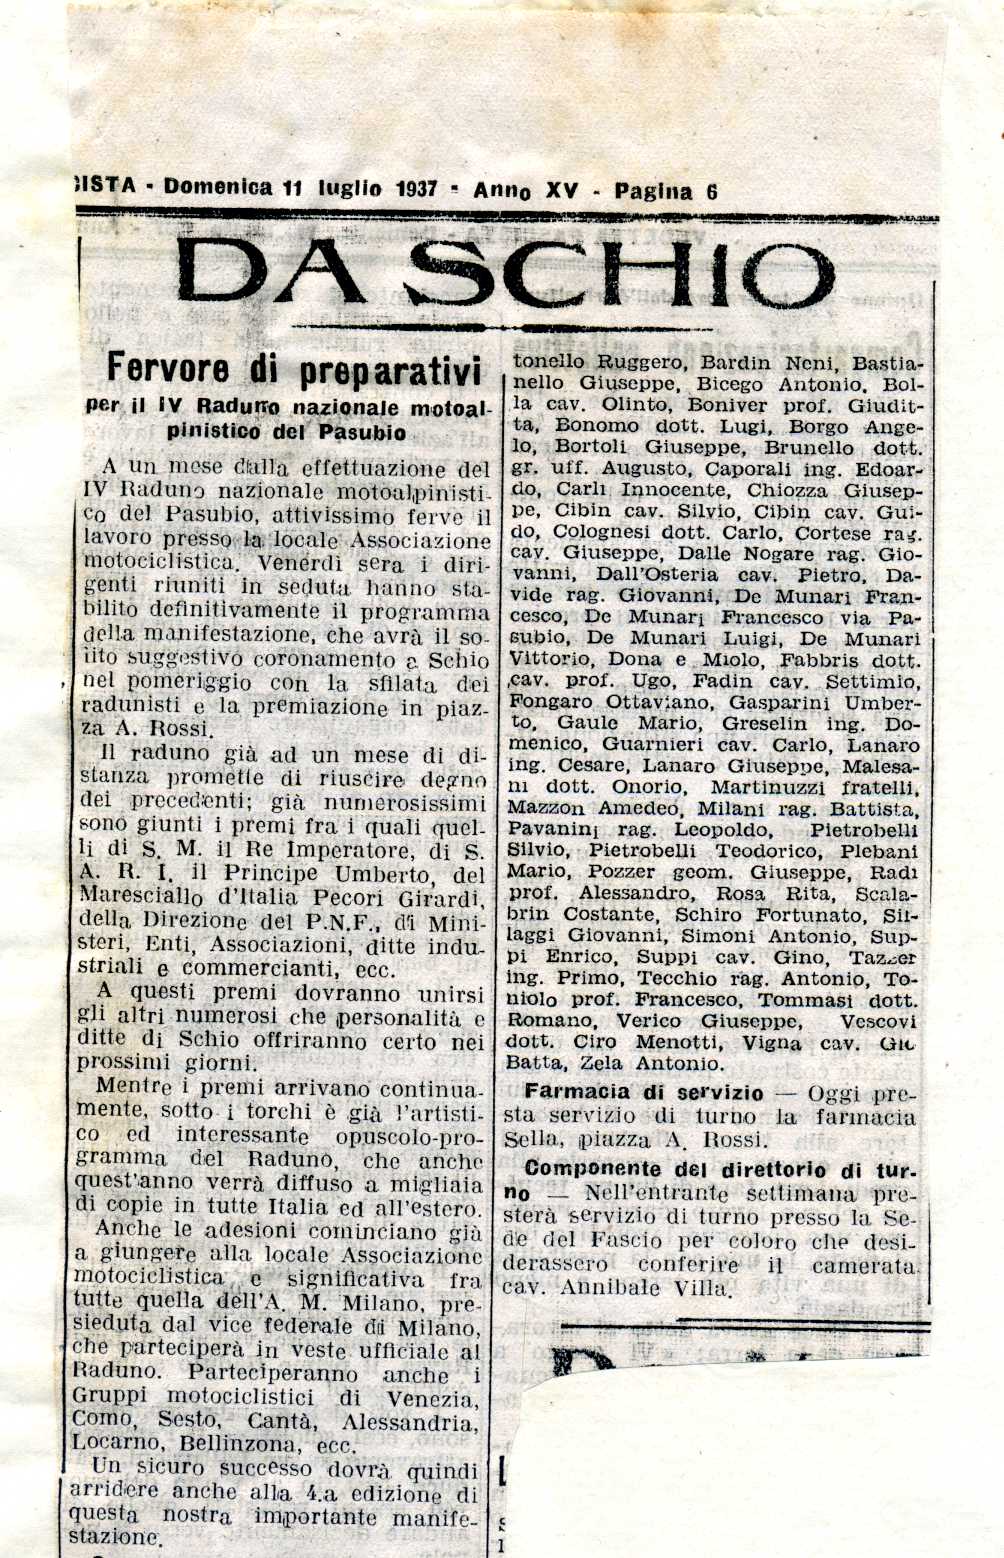 Vedetta fascista 11 luglio 1937